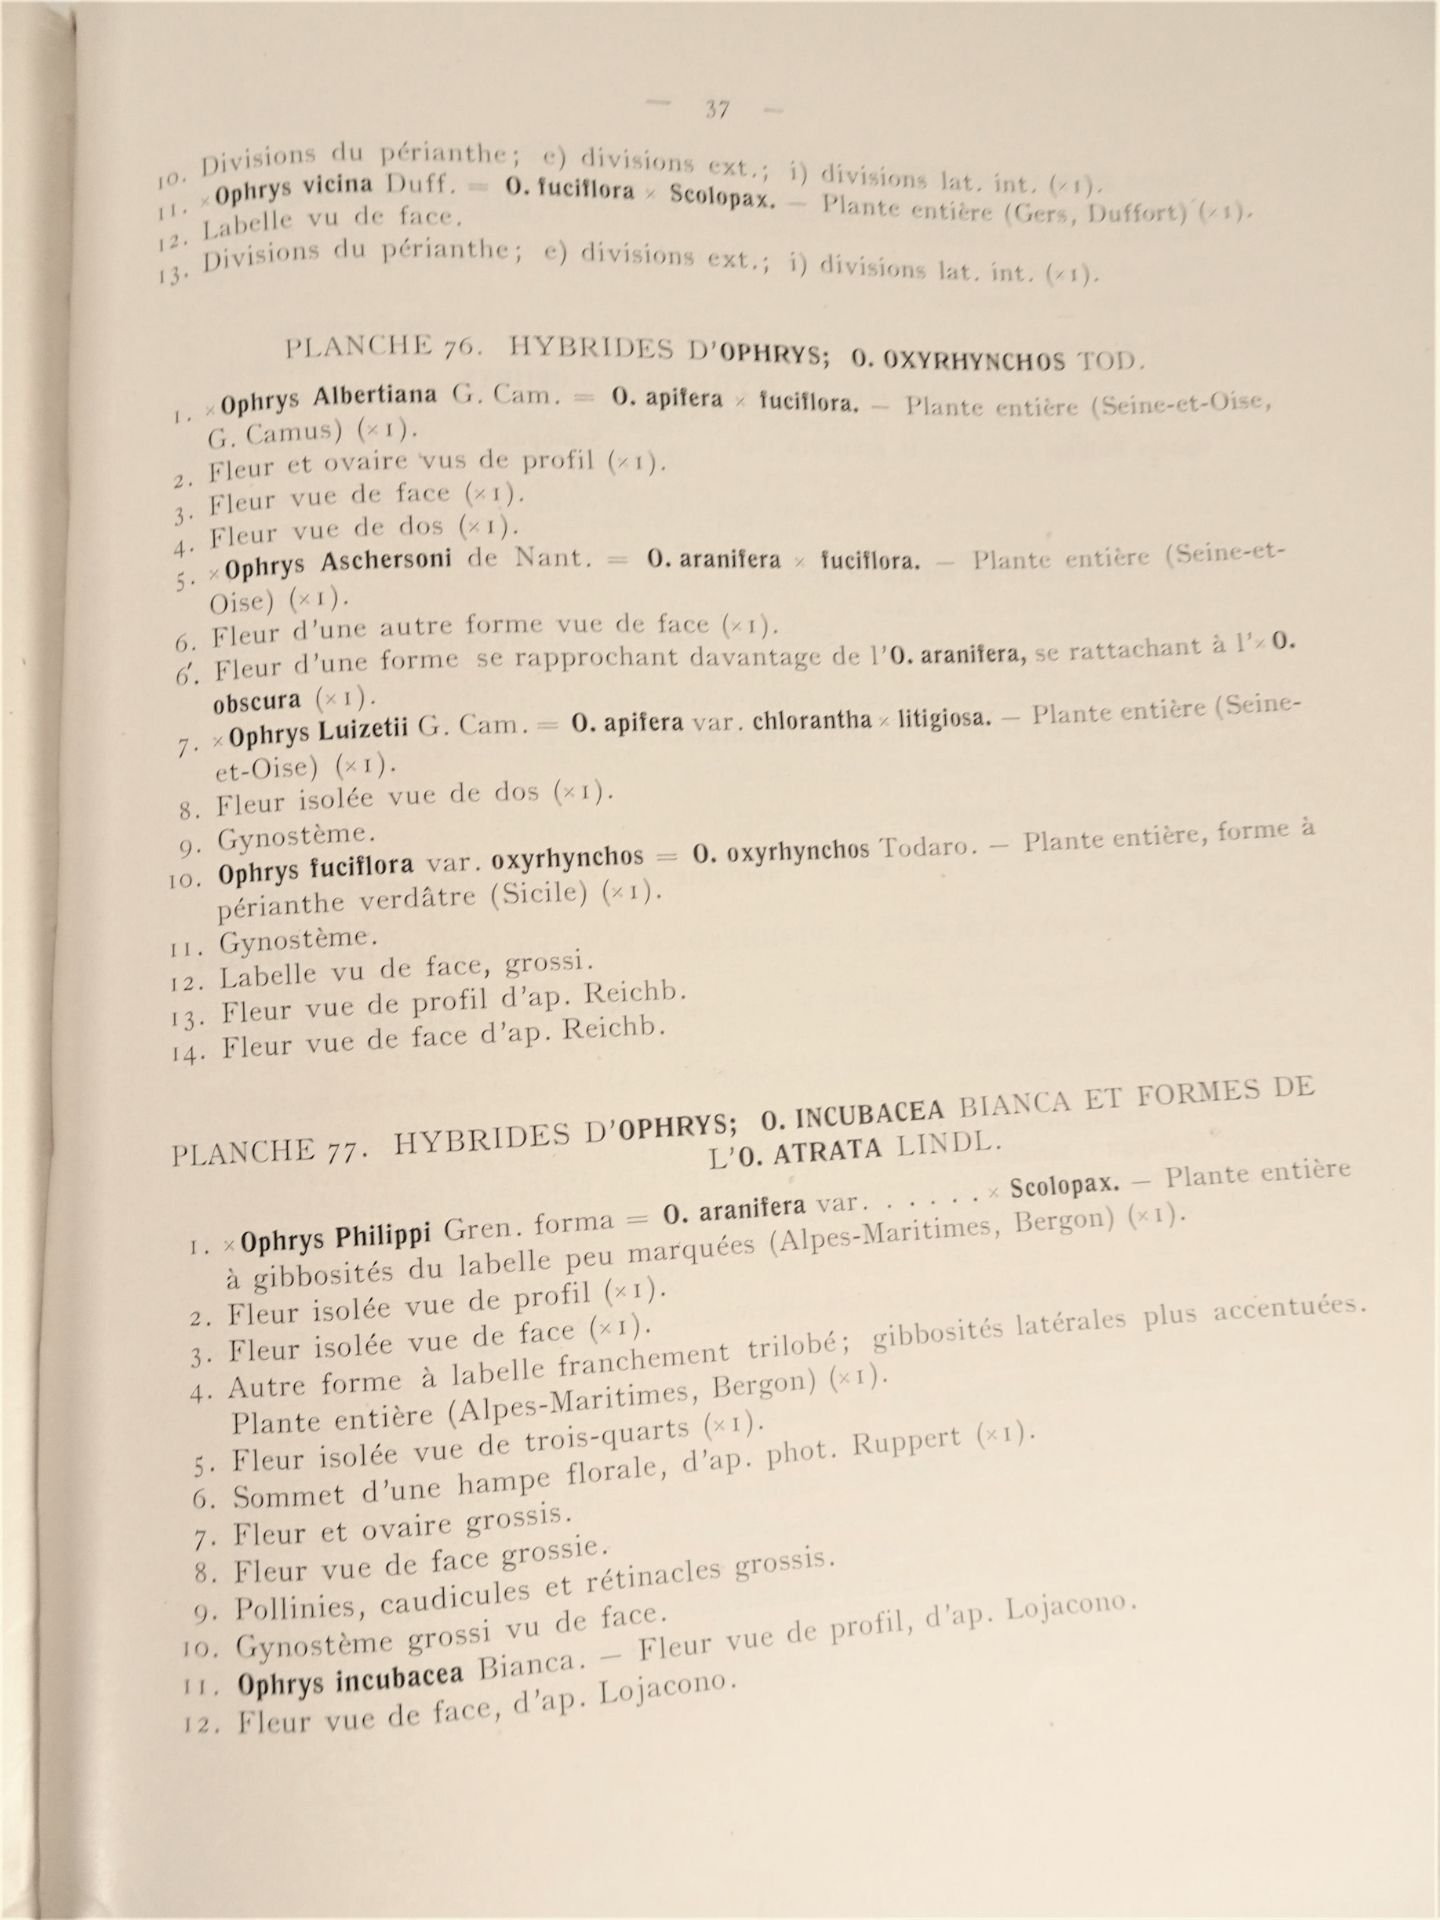 |Orchidaceae| E. G. Camus, "Iconographie des Orchidées d'Europe et du Bassin Méditerranéen", - Image 4 of 14